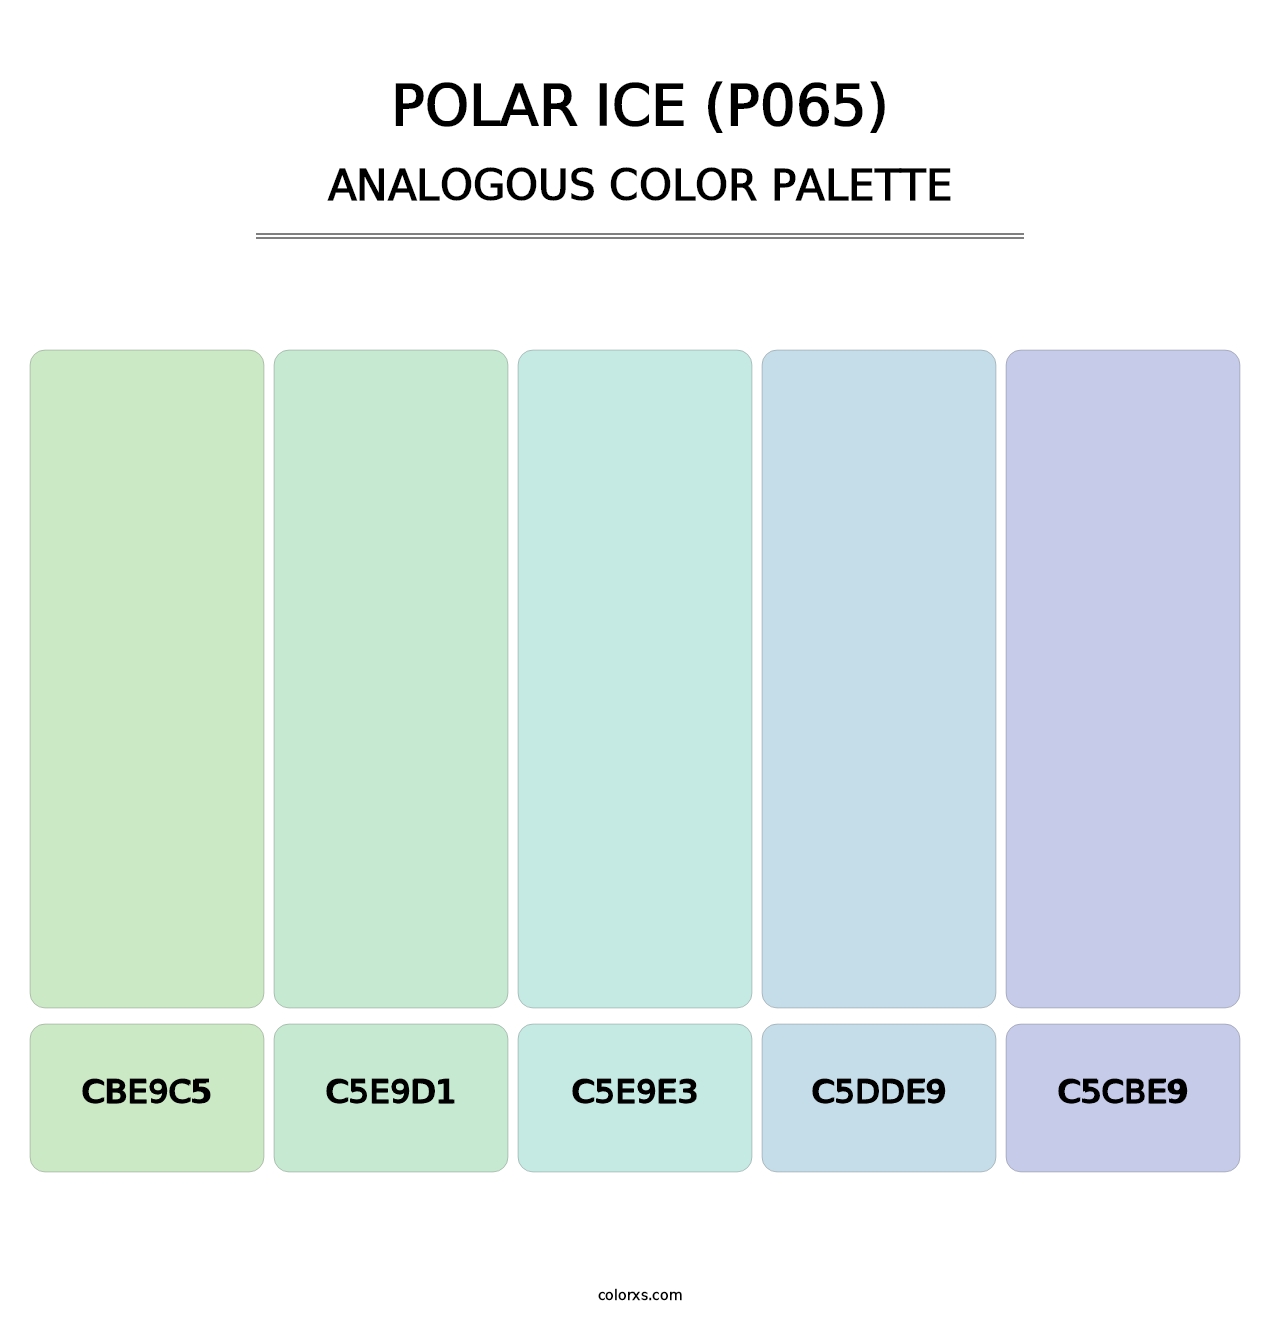 Polar Ice (P065) - Analogous Color Palette